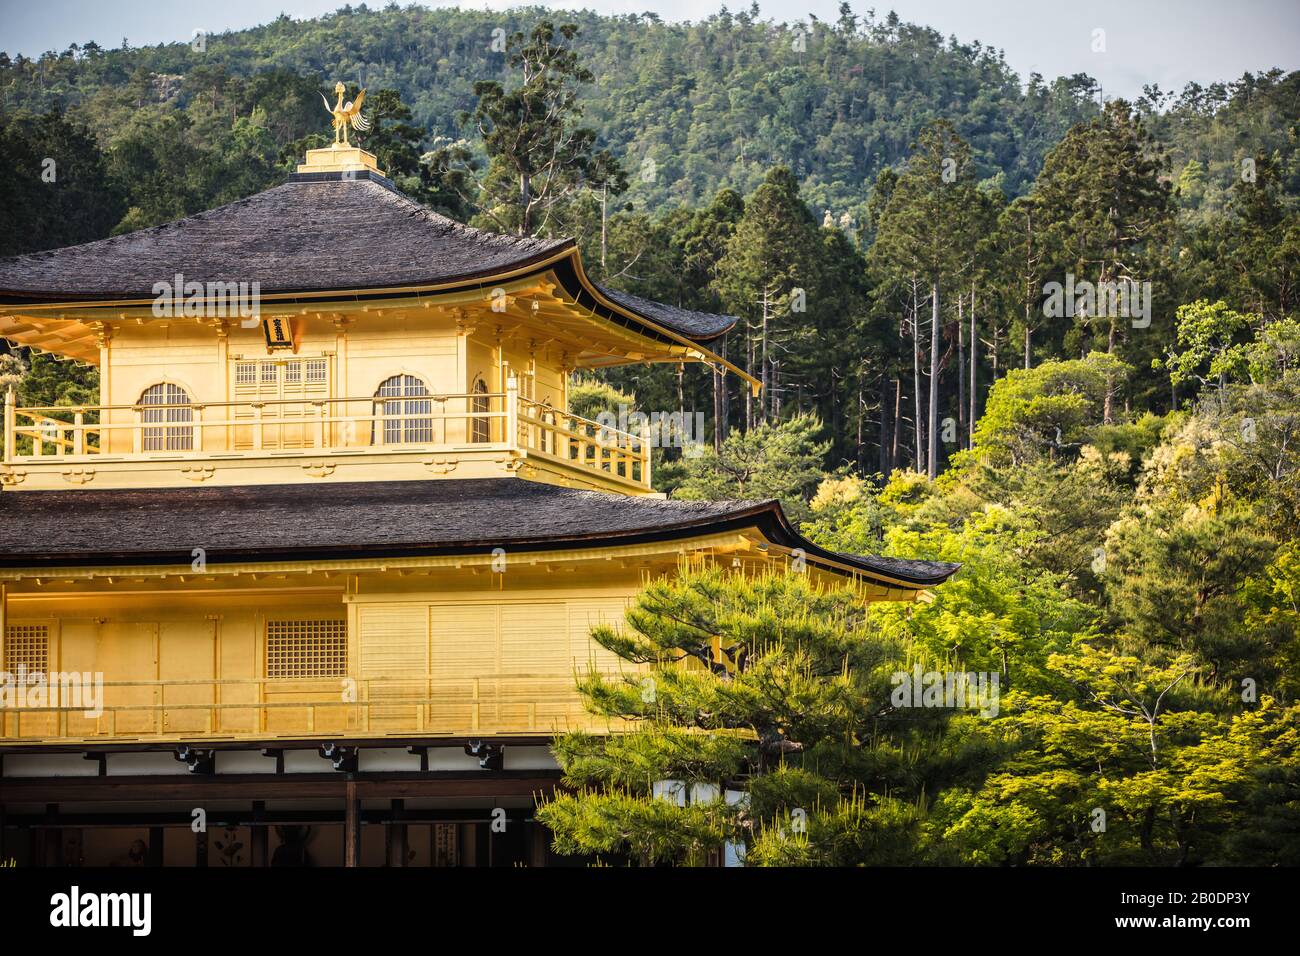 Kinkakuji Temple or The Golden Pavilion in Kyoto, Japan Stock Photo